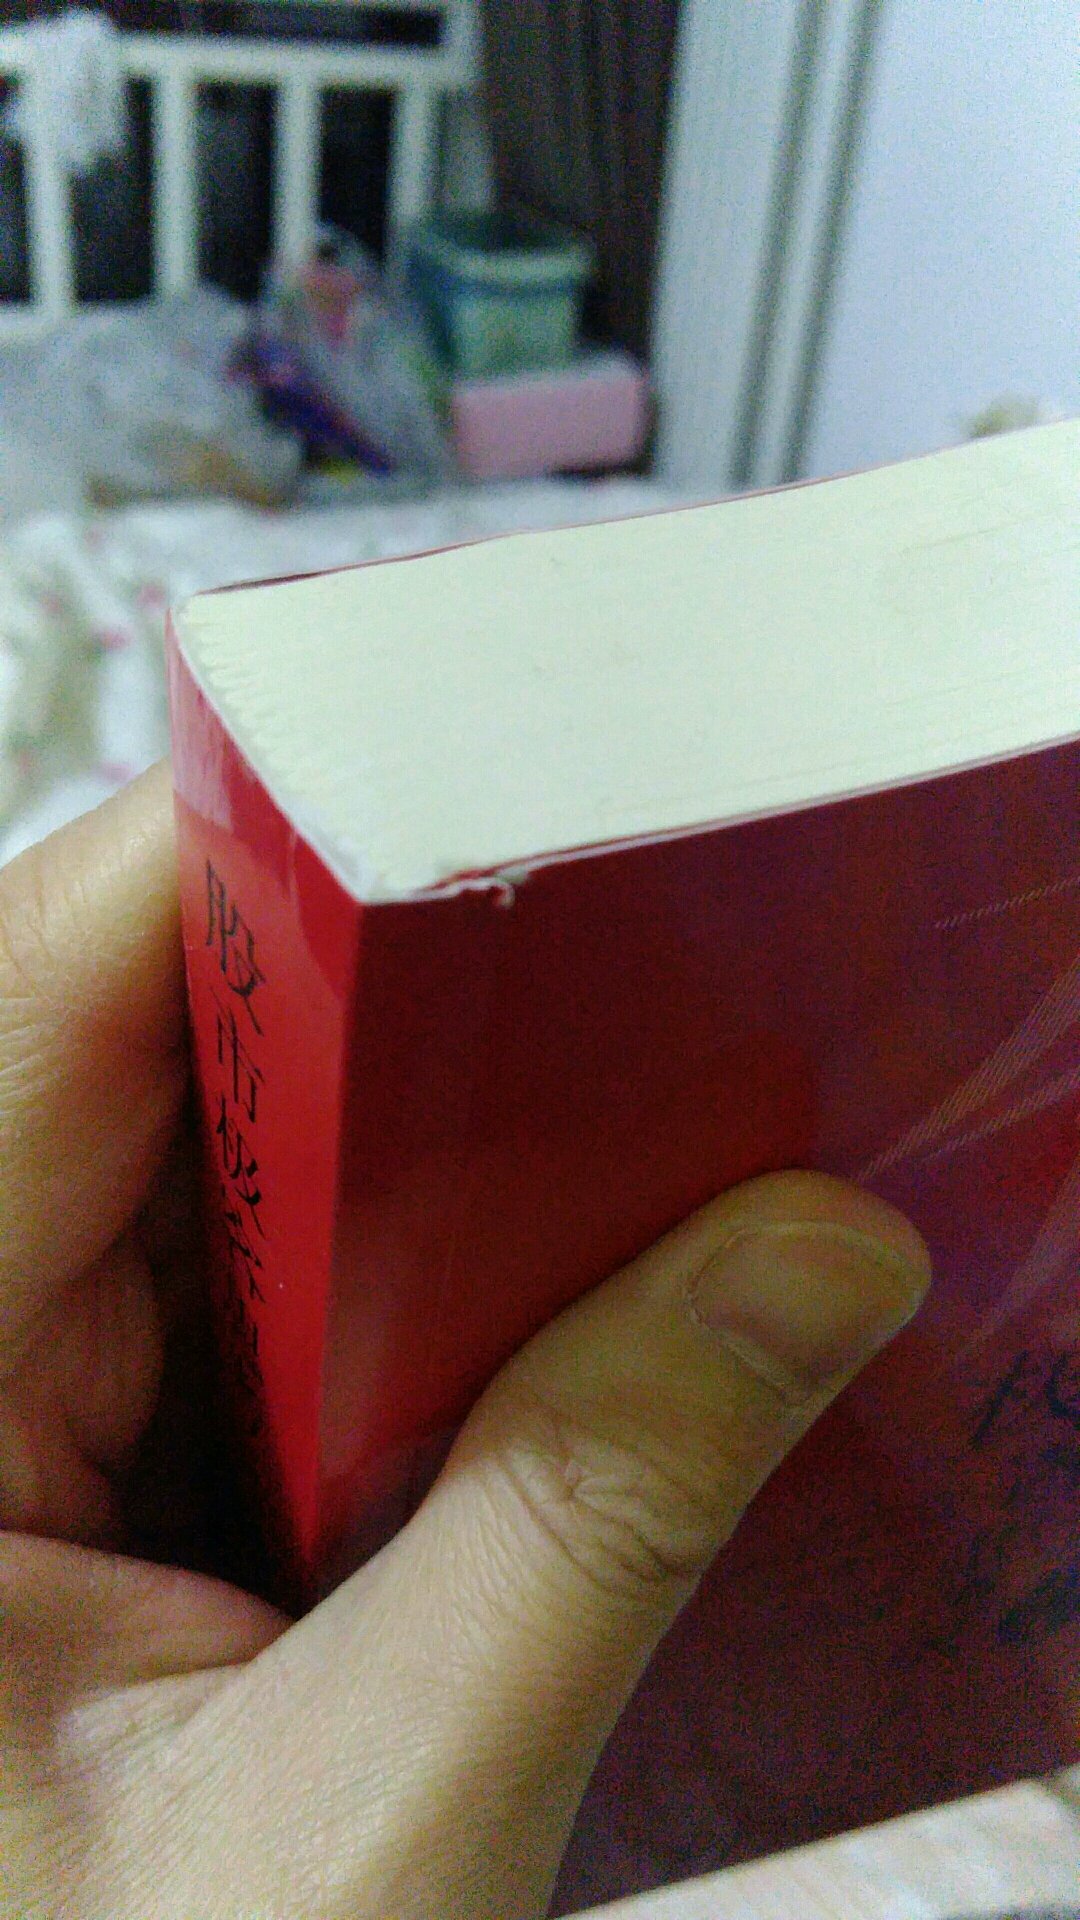 这个书连个塑料皮都没有，来的时候好像是样品书，被人看过的。而且书边角都有开口的。书封面很多破损。第一次在买到这样的书。凑合看，懒得退了。真失望！